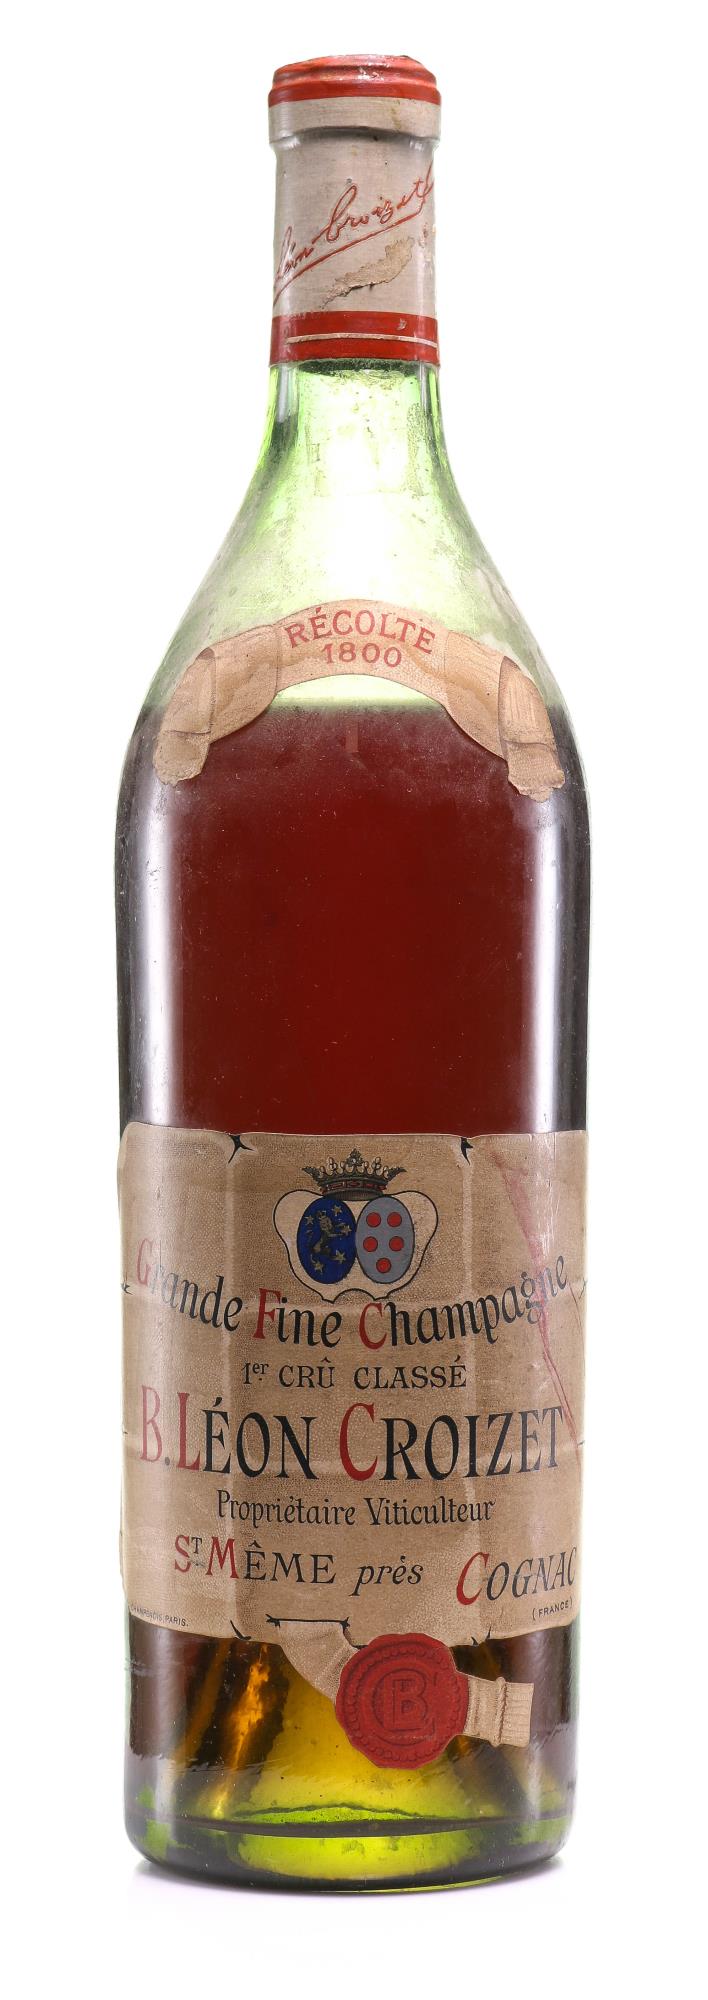 Croizet 1800 Grande Fine Champagne Cognac - Rue Pinard